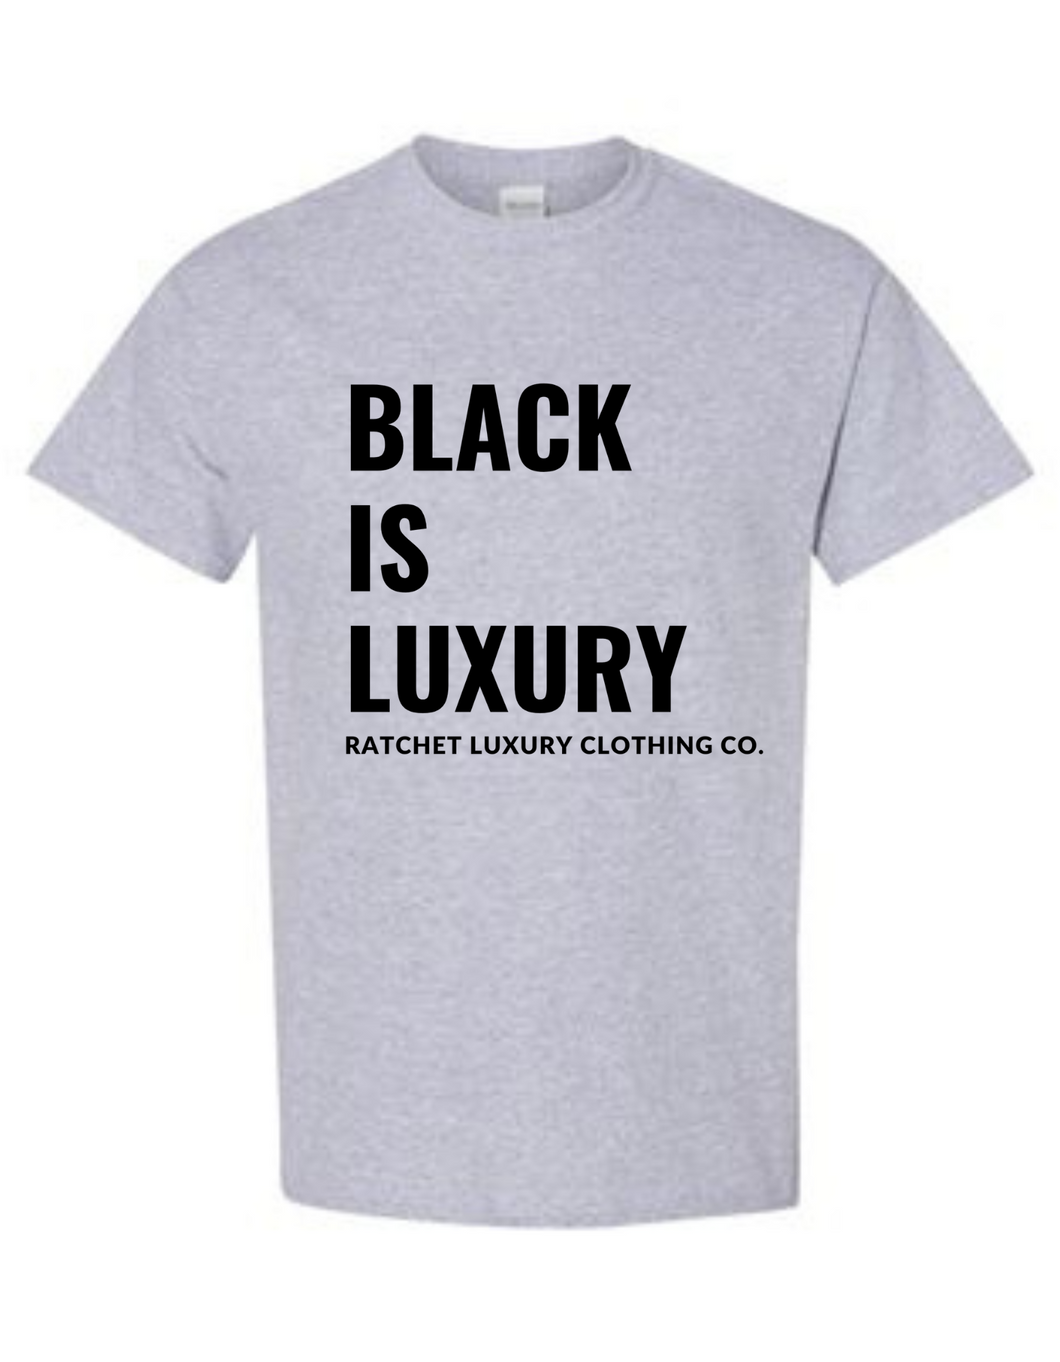 BLACK IS LUXURY TEE